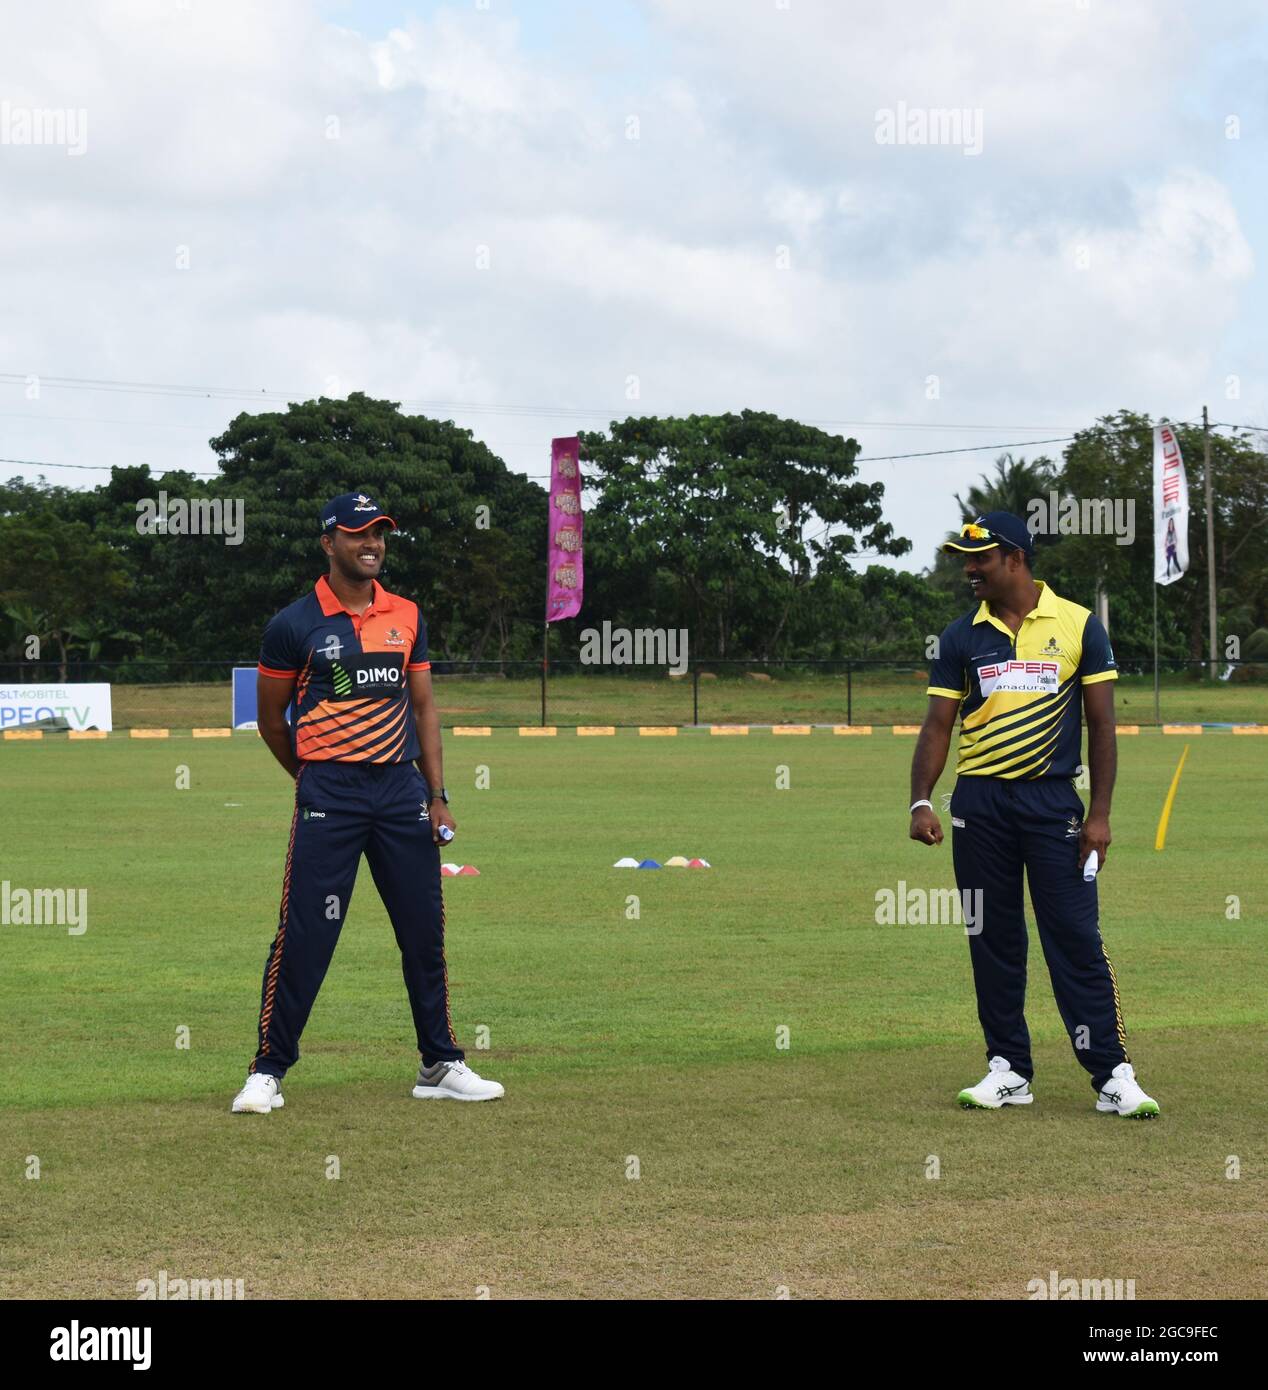 Les joueurs de cricket du Sri Lanka Dinesh Chandimal et Seekuge Prasanna à la mise en jeu pour un match. Au pittoresque terrain de cricket de l'Army Ordinance. Dombagode. Sri Lanka. Banque D'Images